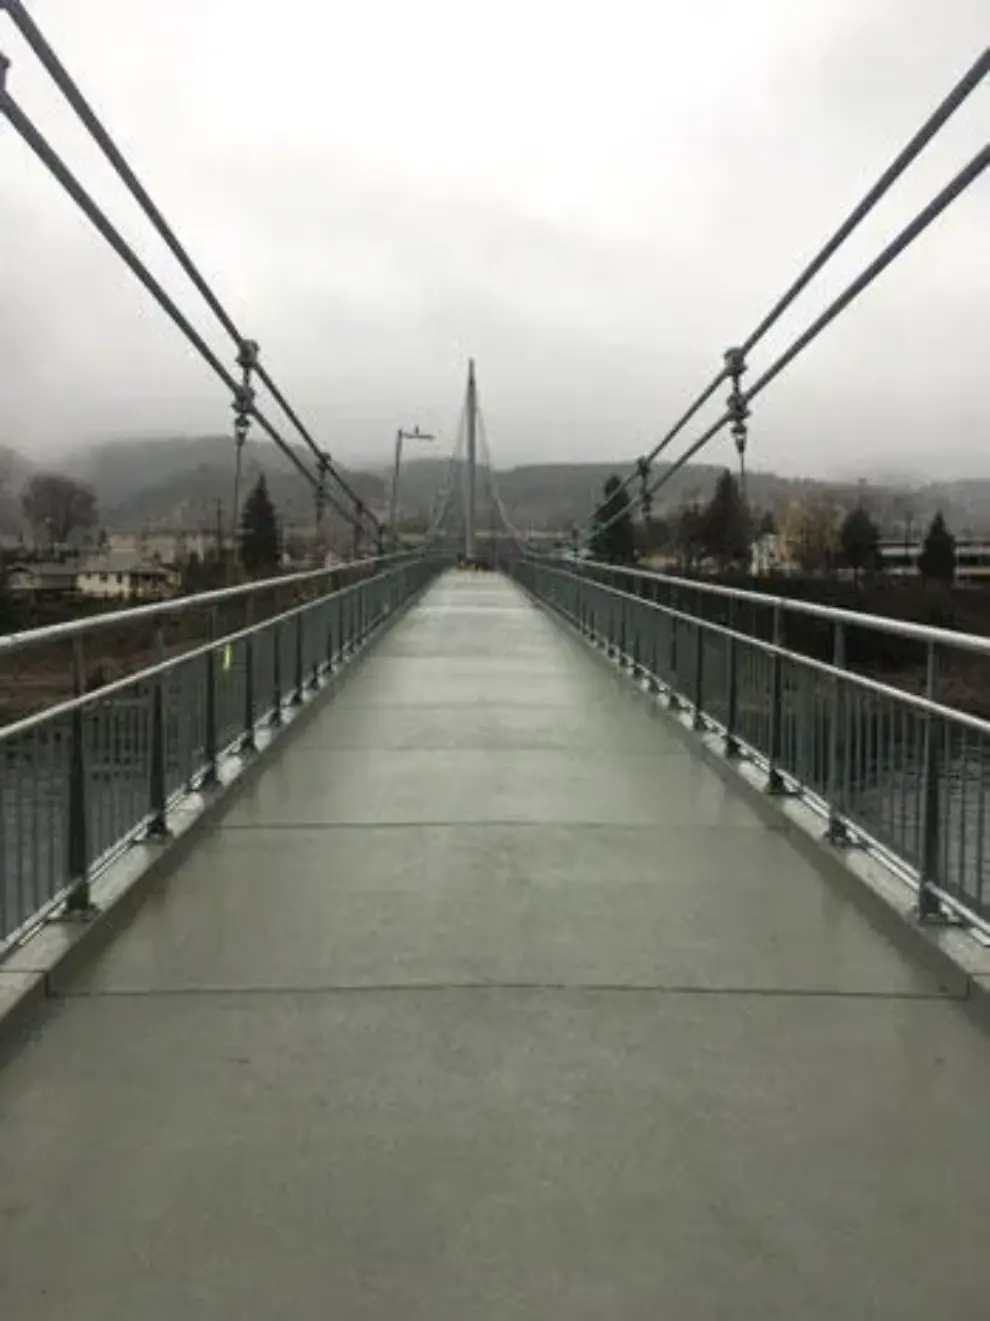 British Columbia District chooses composite bridge system